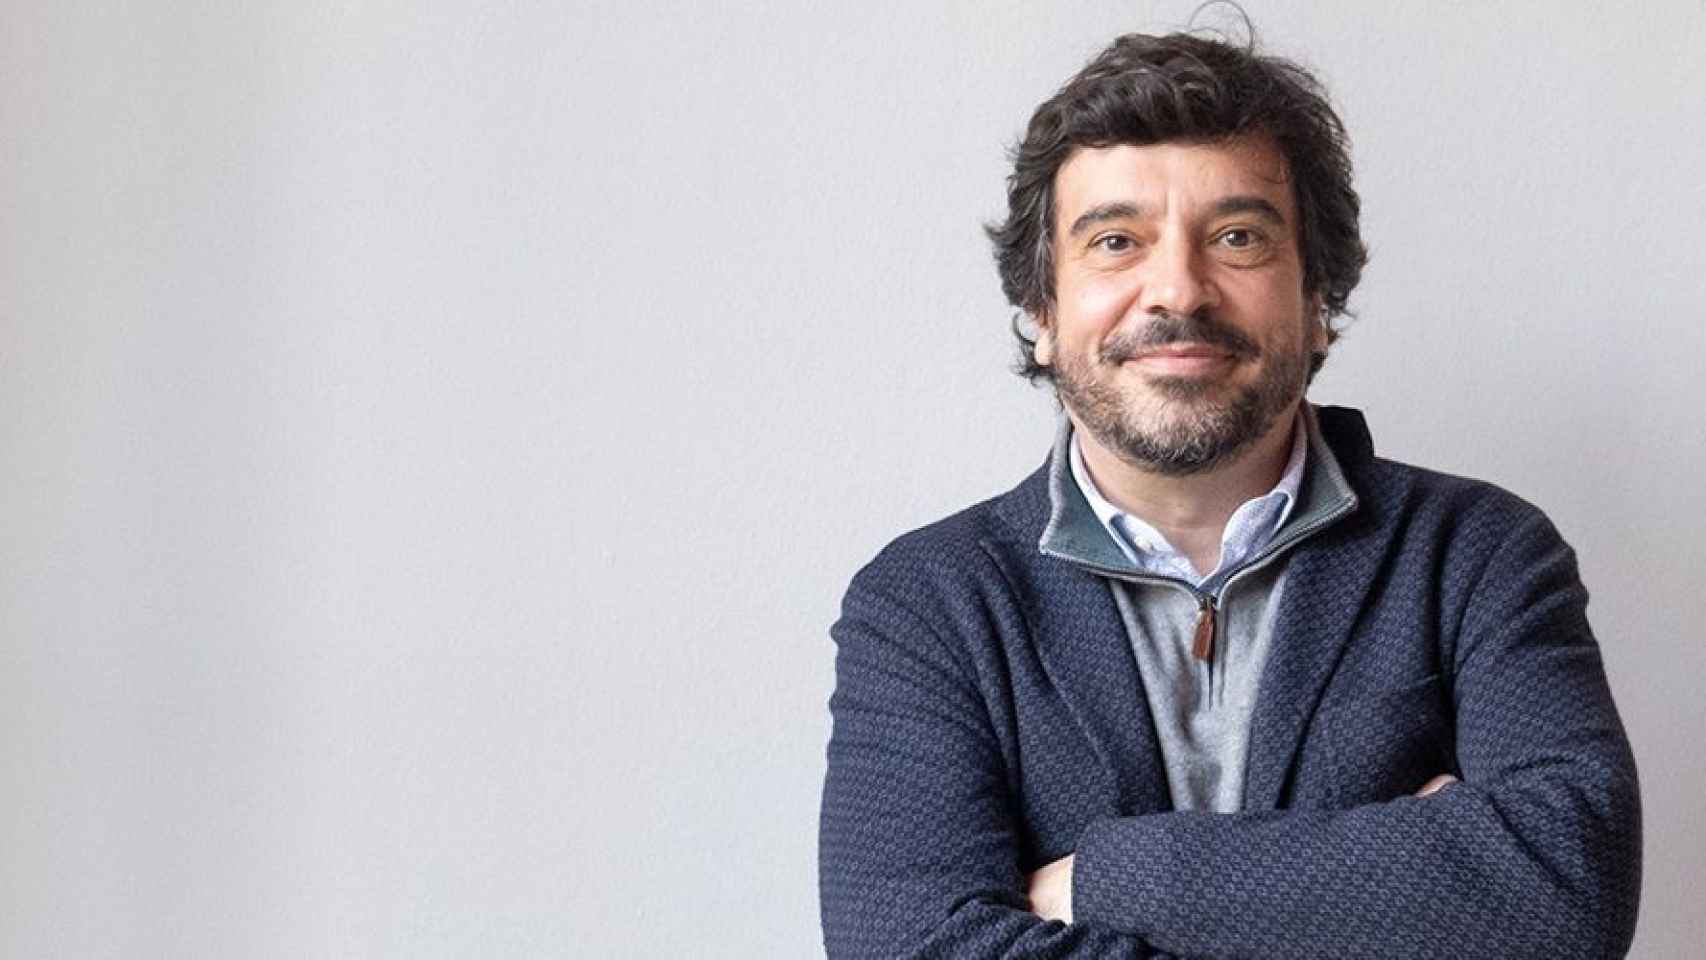 Dani Mòdol, exconcejal del PSC y arquitecto, posa para Metrópoli Abierta tras analizar la gestión de Colau y el presente de Barcelona / PABLO MIRANZO (MA)